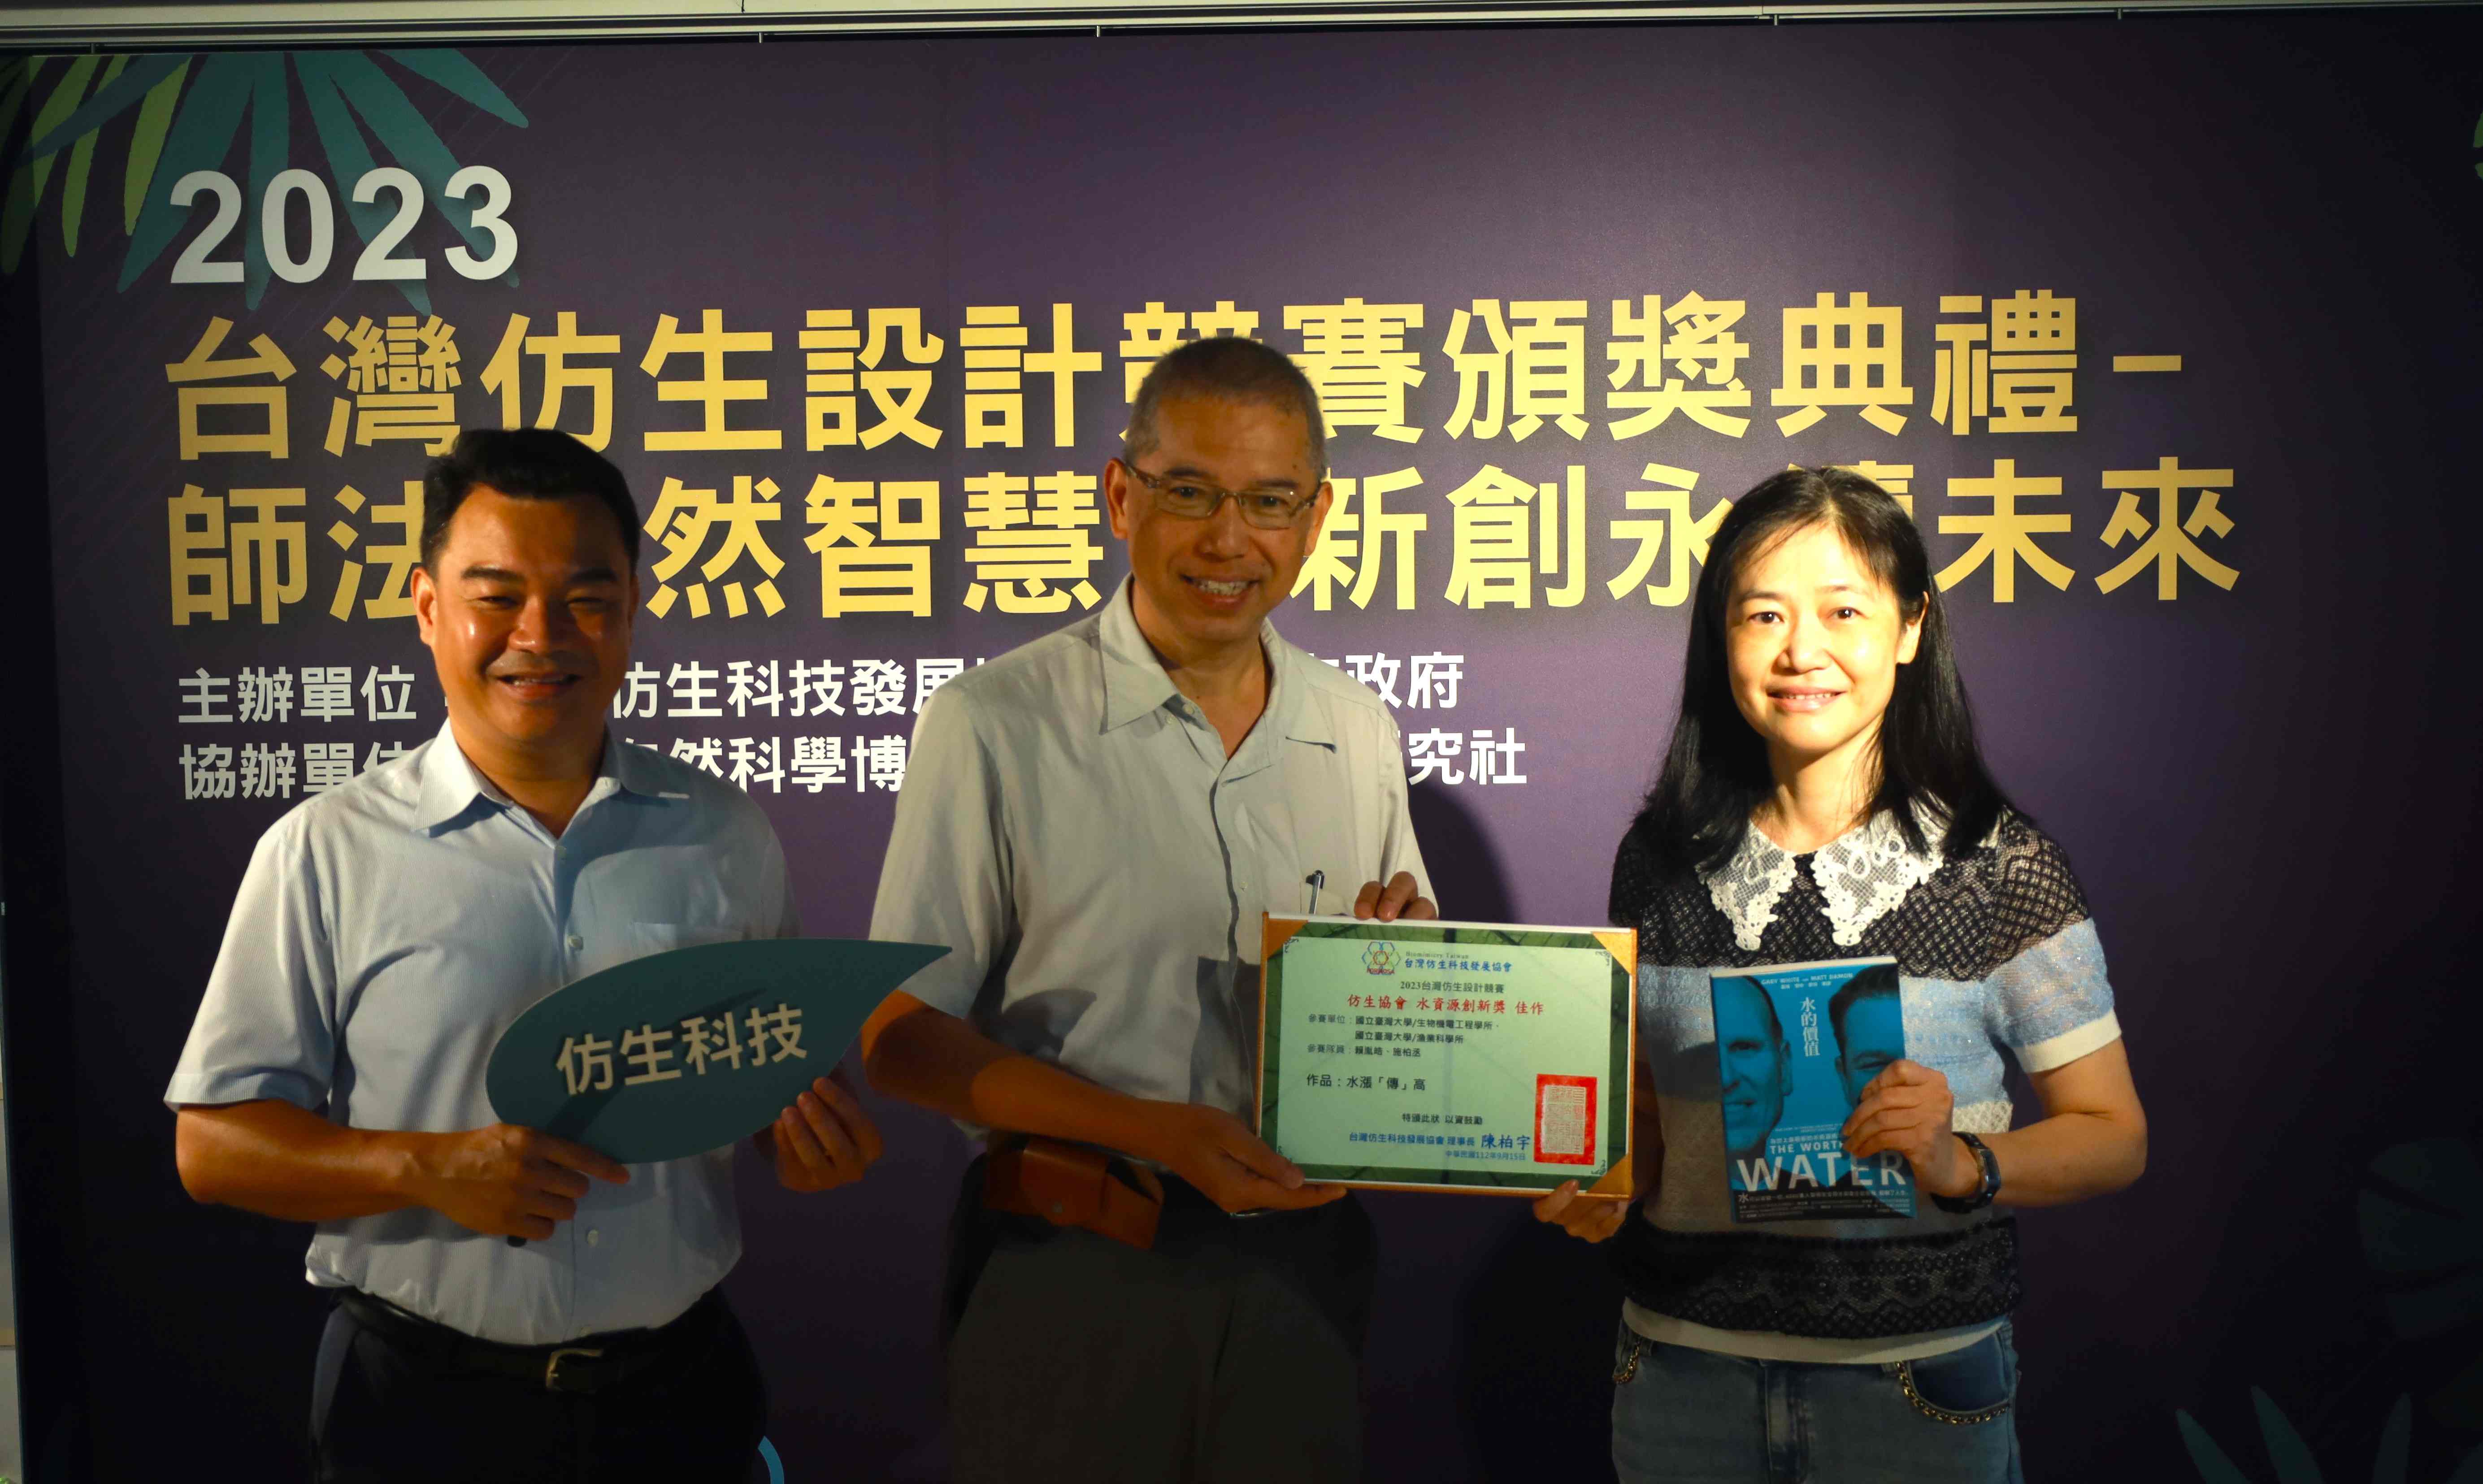 台經社孫智麗社長(右一)致贈《水的價值》一書給予水資源獎項佳作團隊